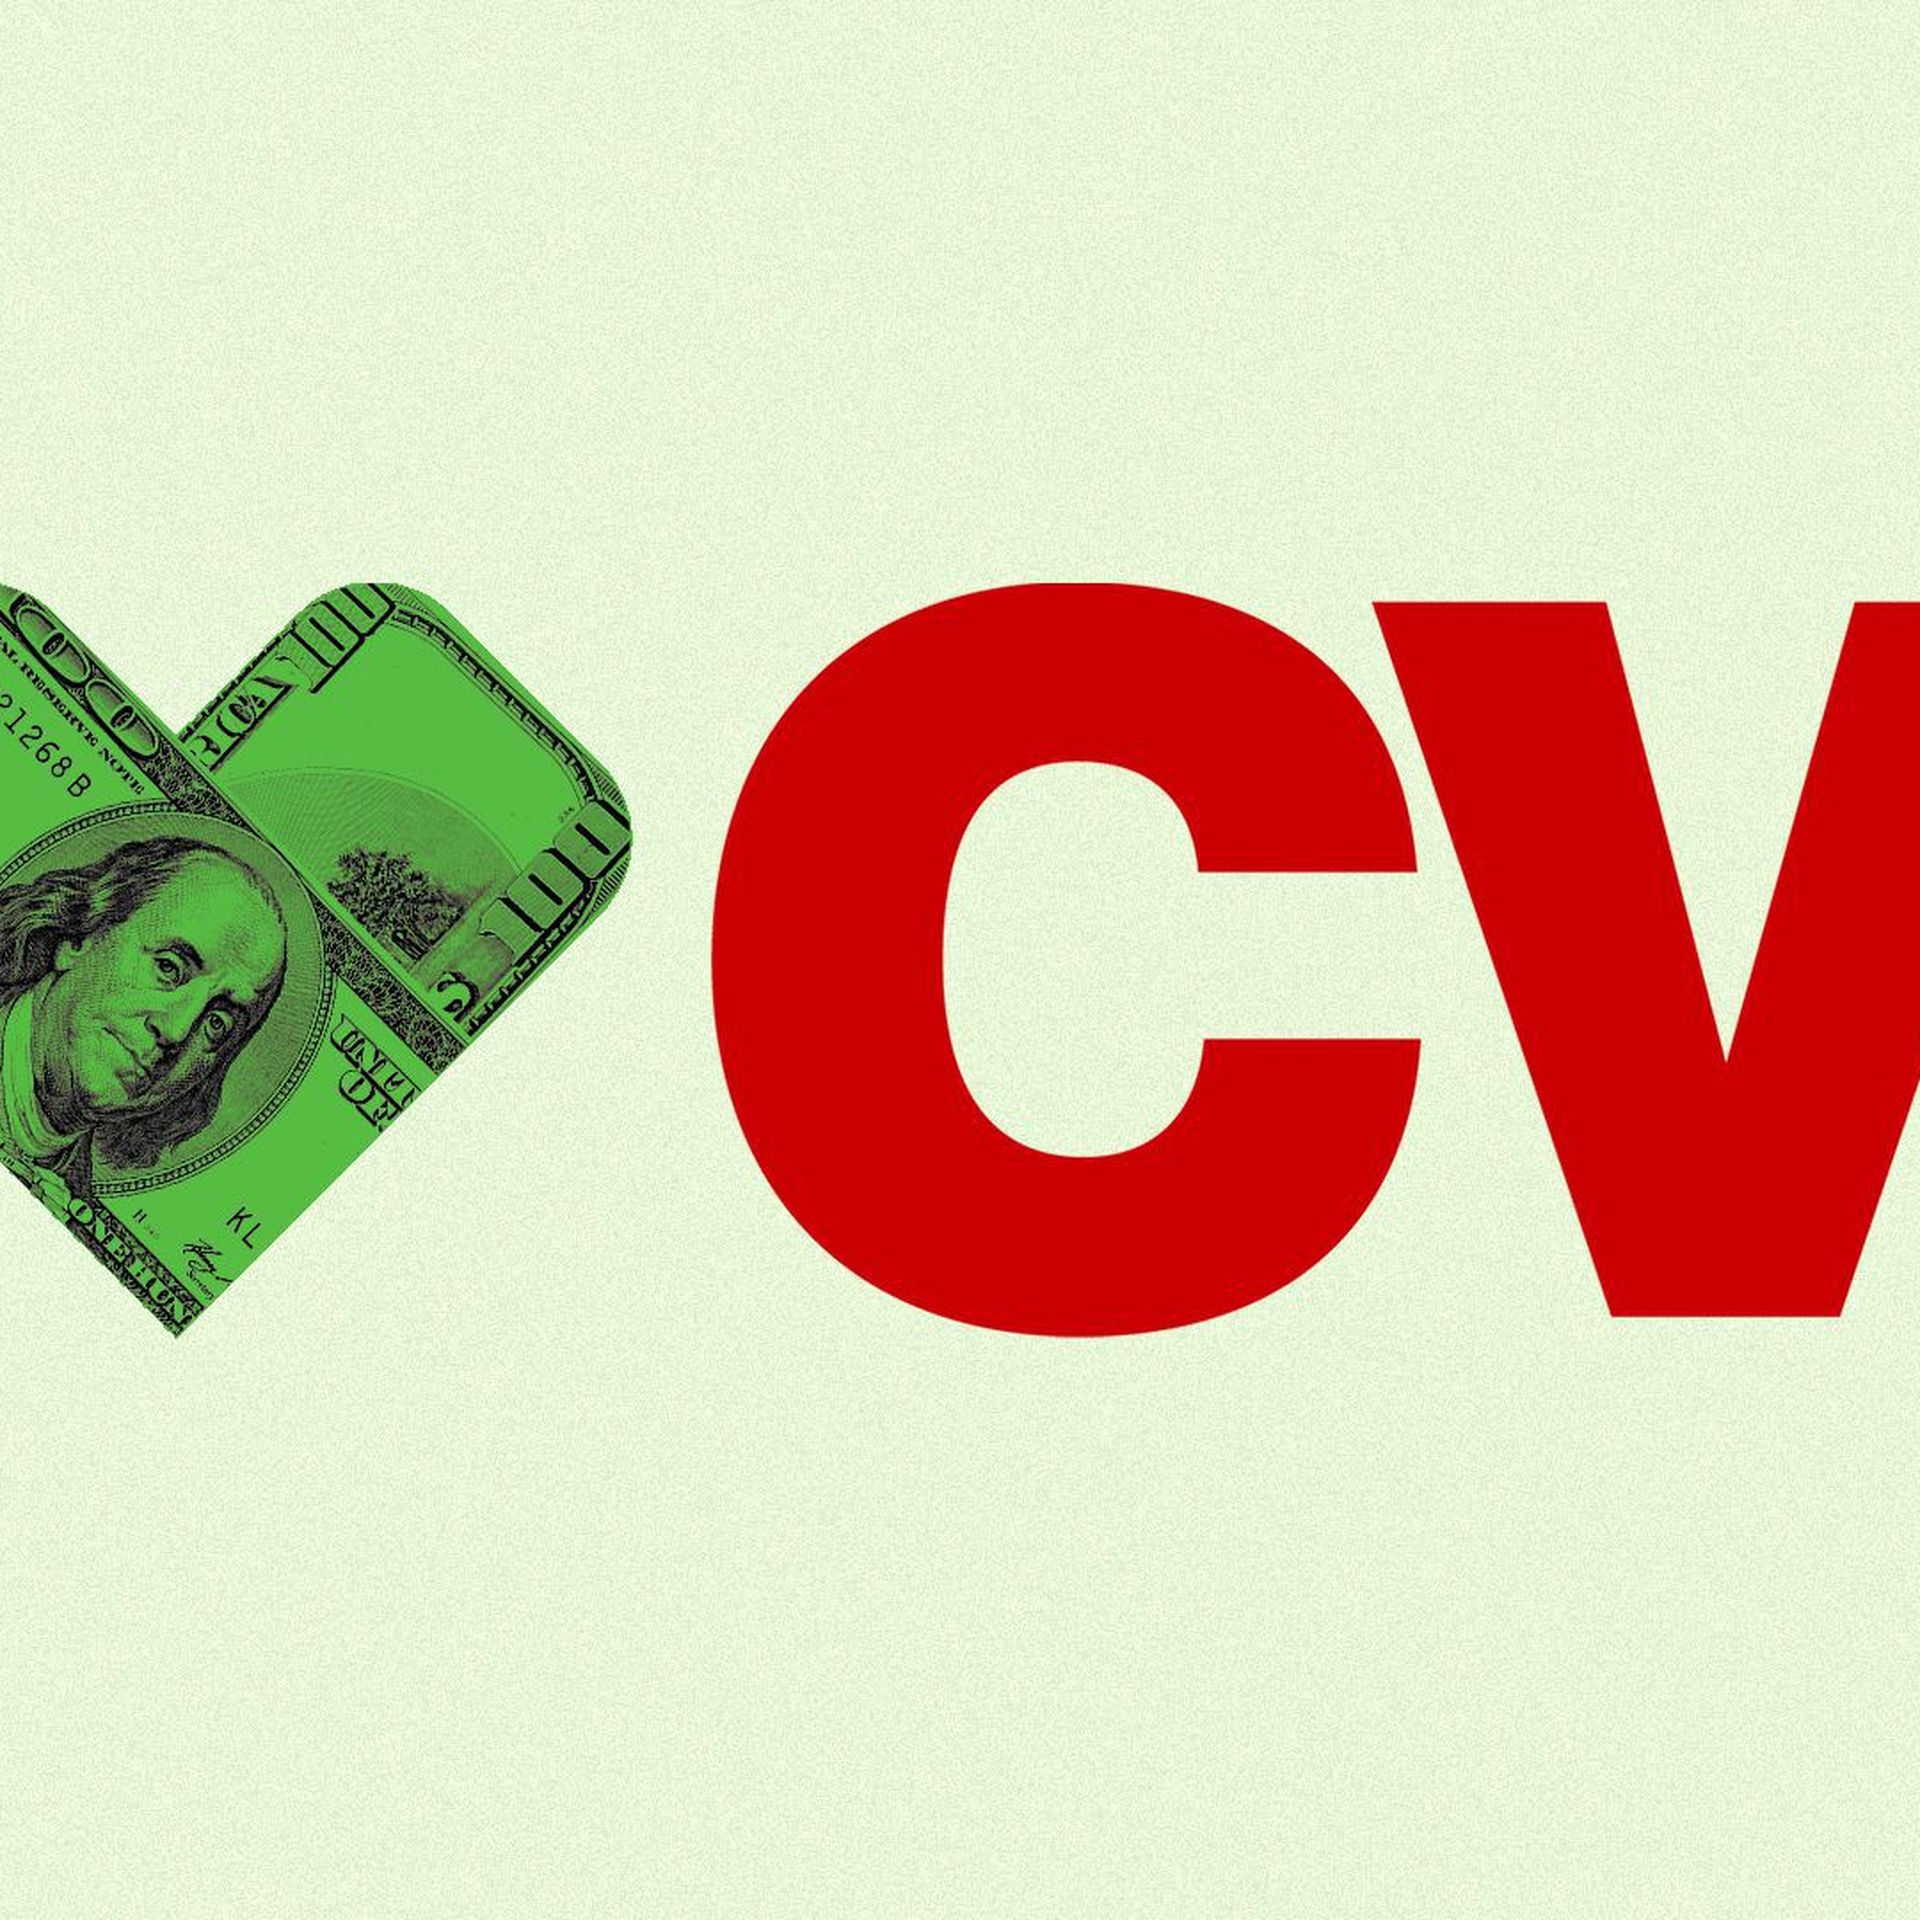 CVS logo with money bandage icon